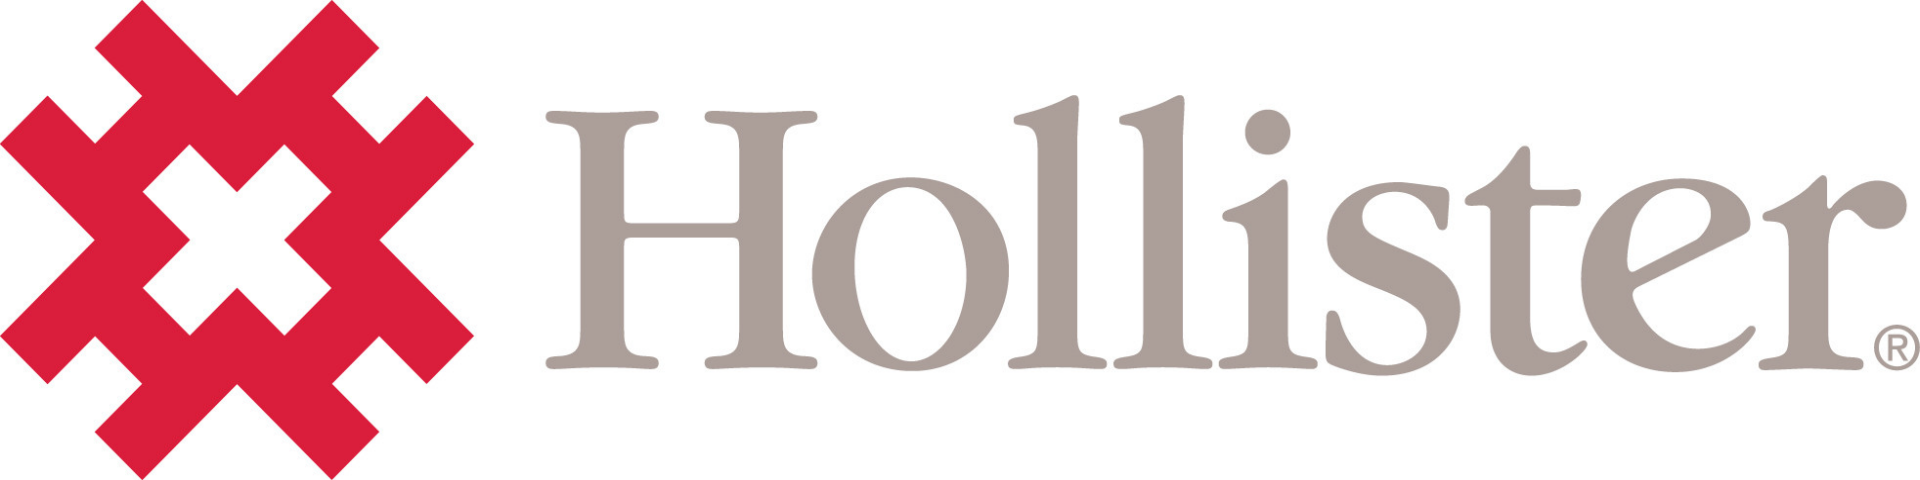 Hollister Incorporated
Niederlassung Deutschland